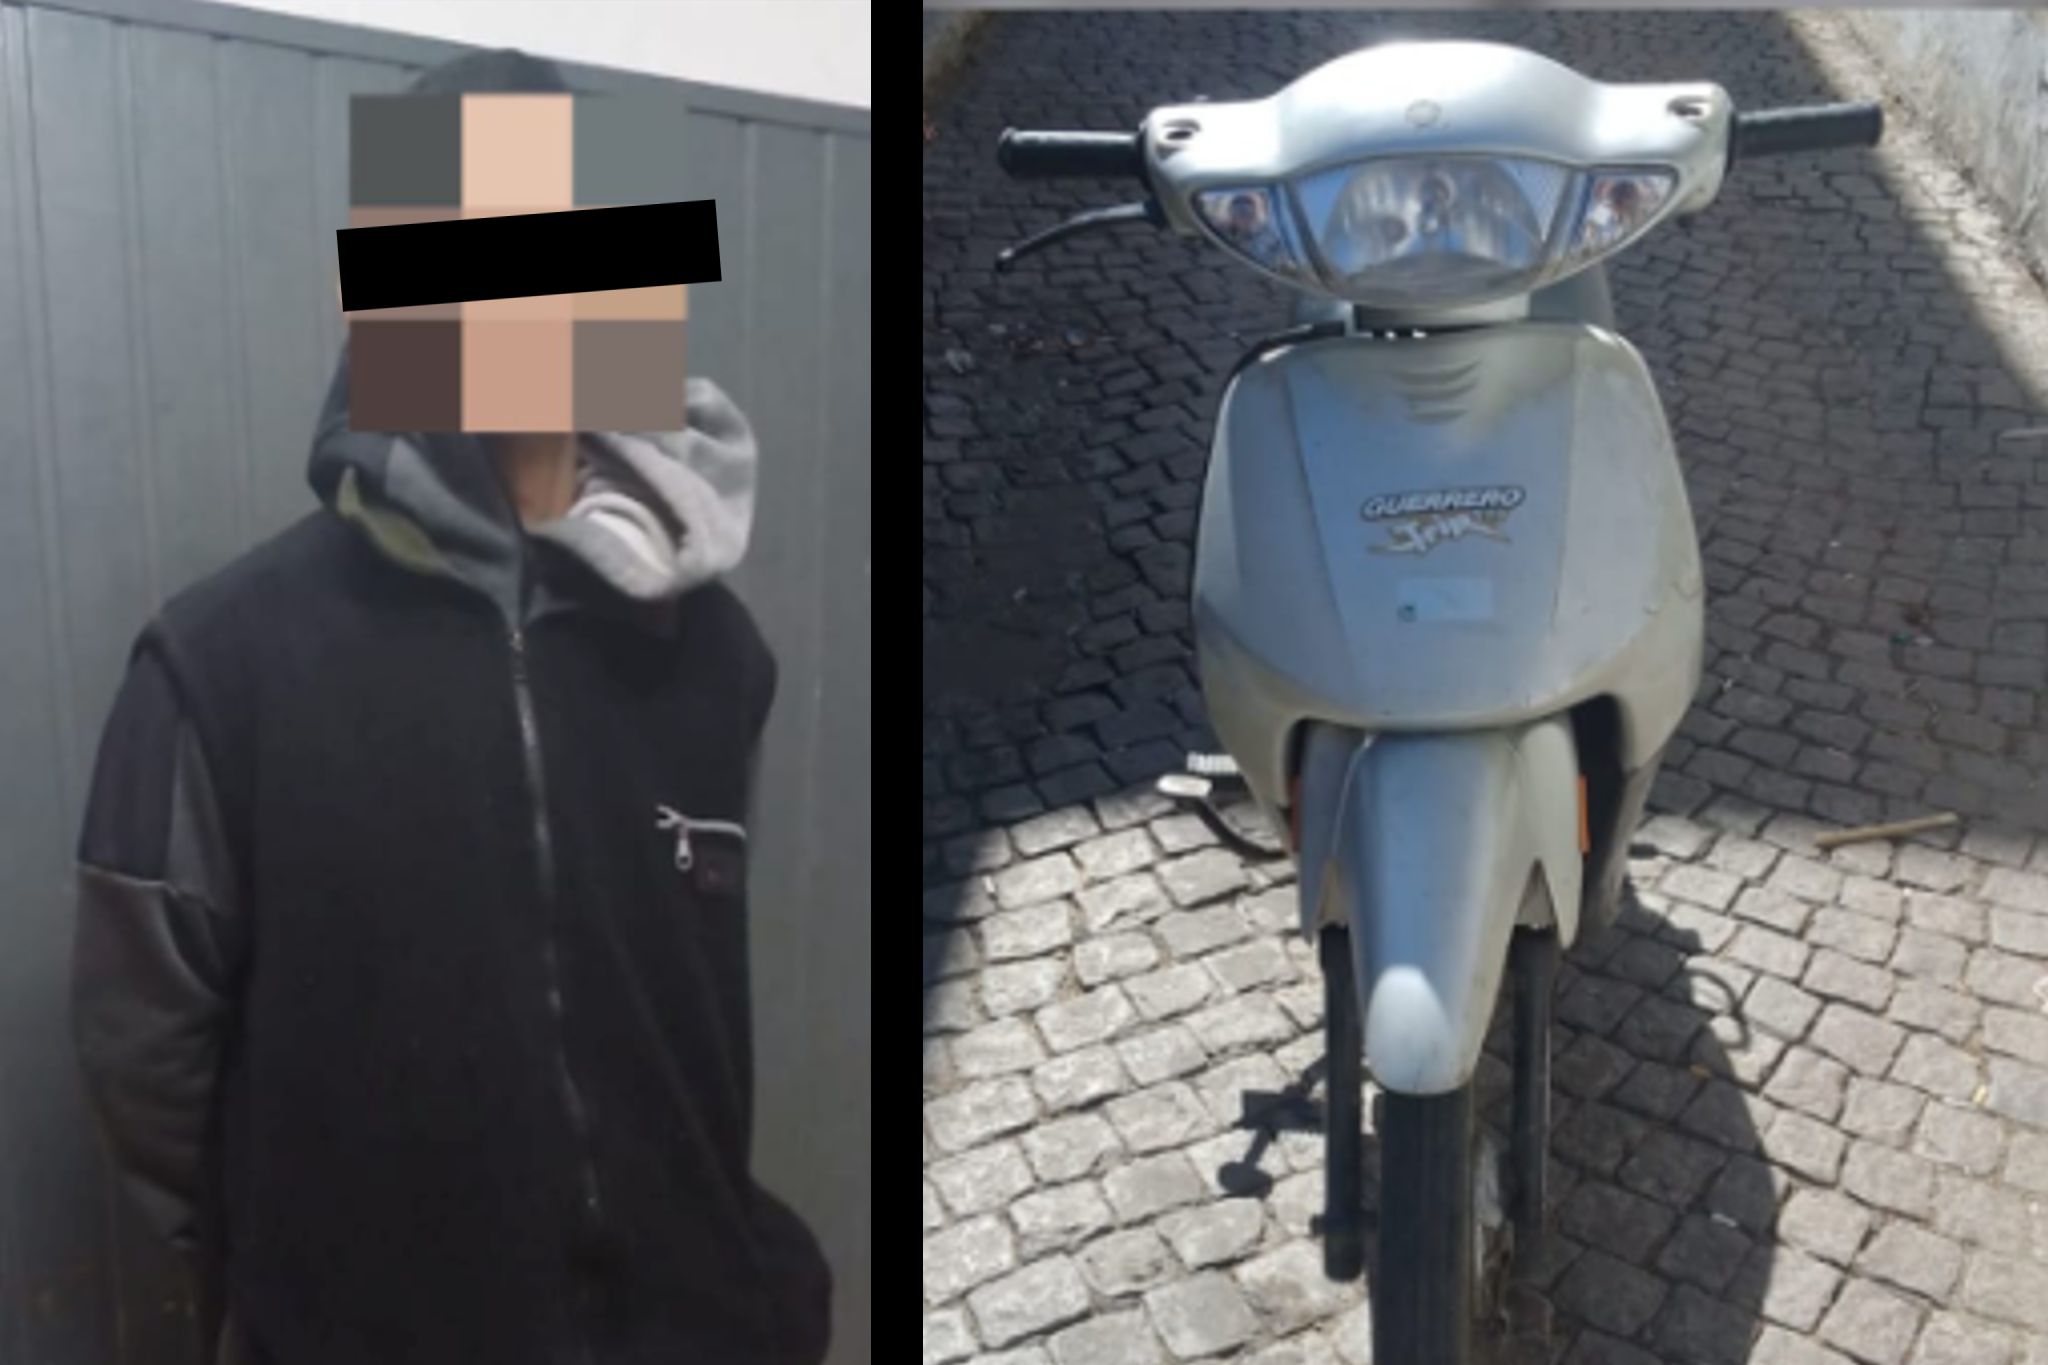 moto guerrero robada fue recuperada en san nicolas